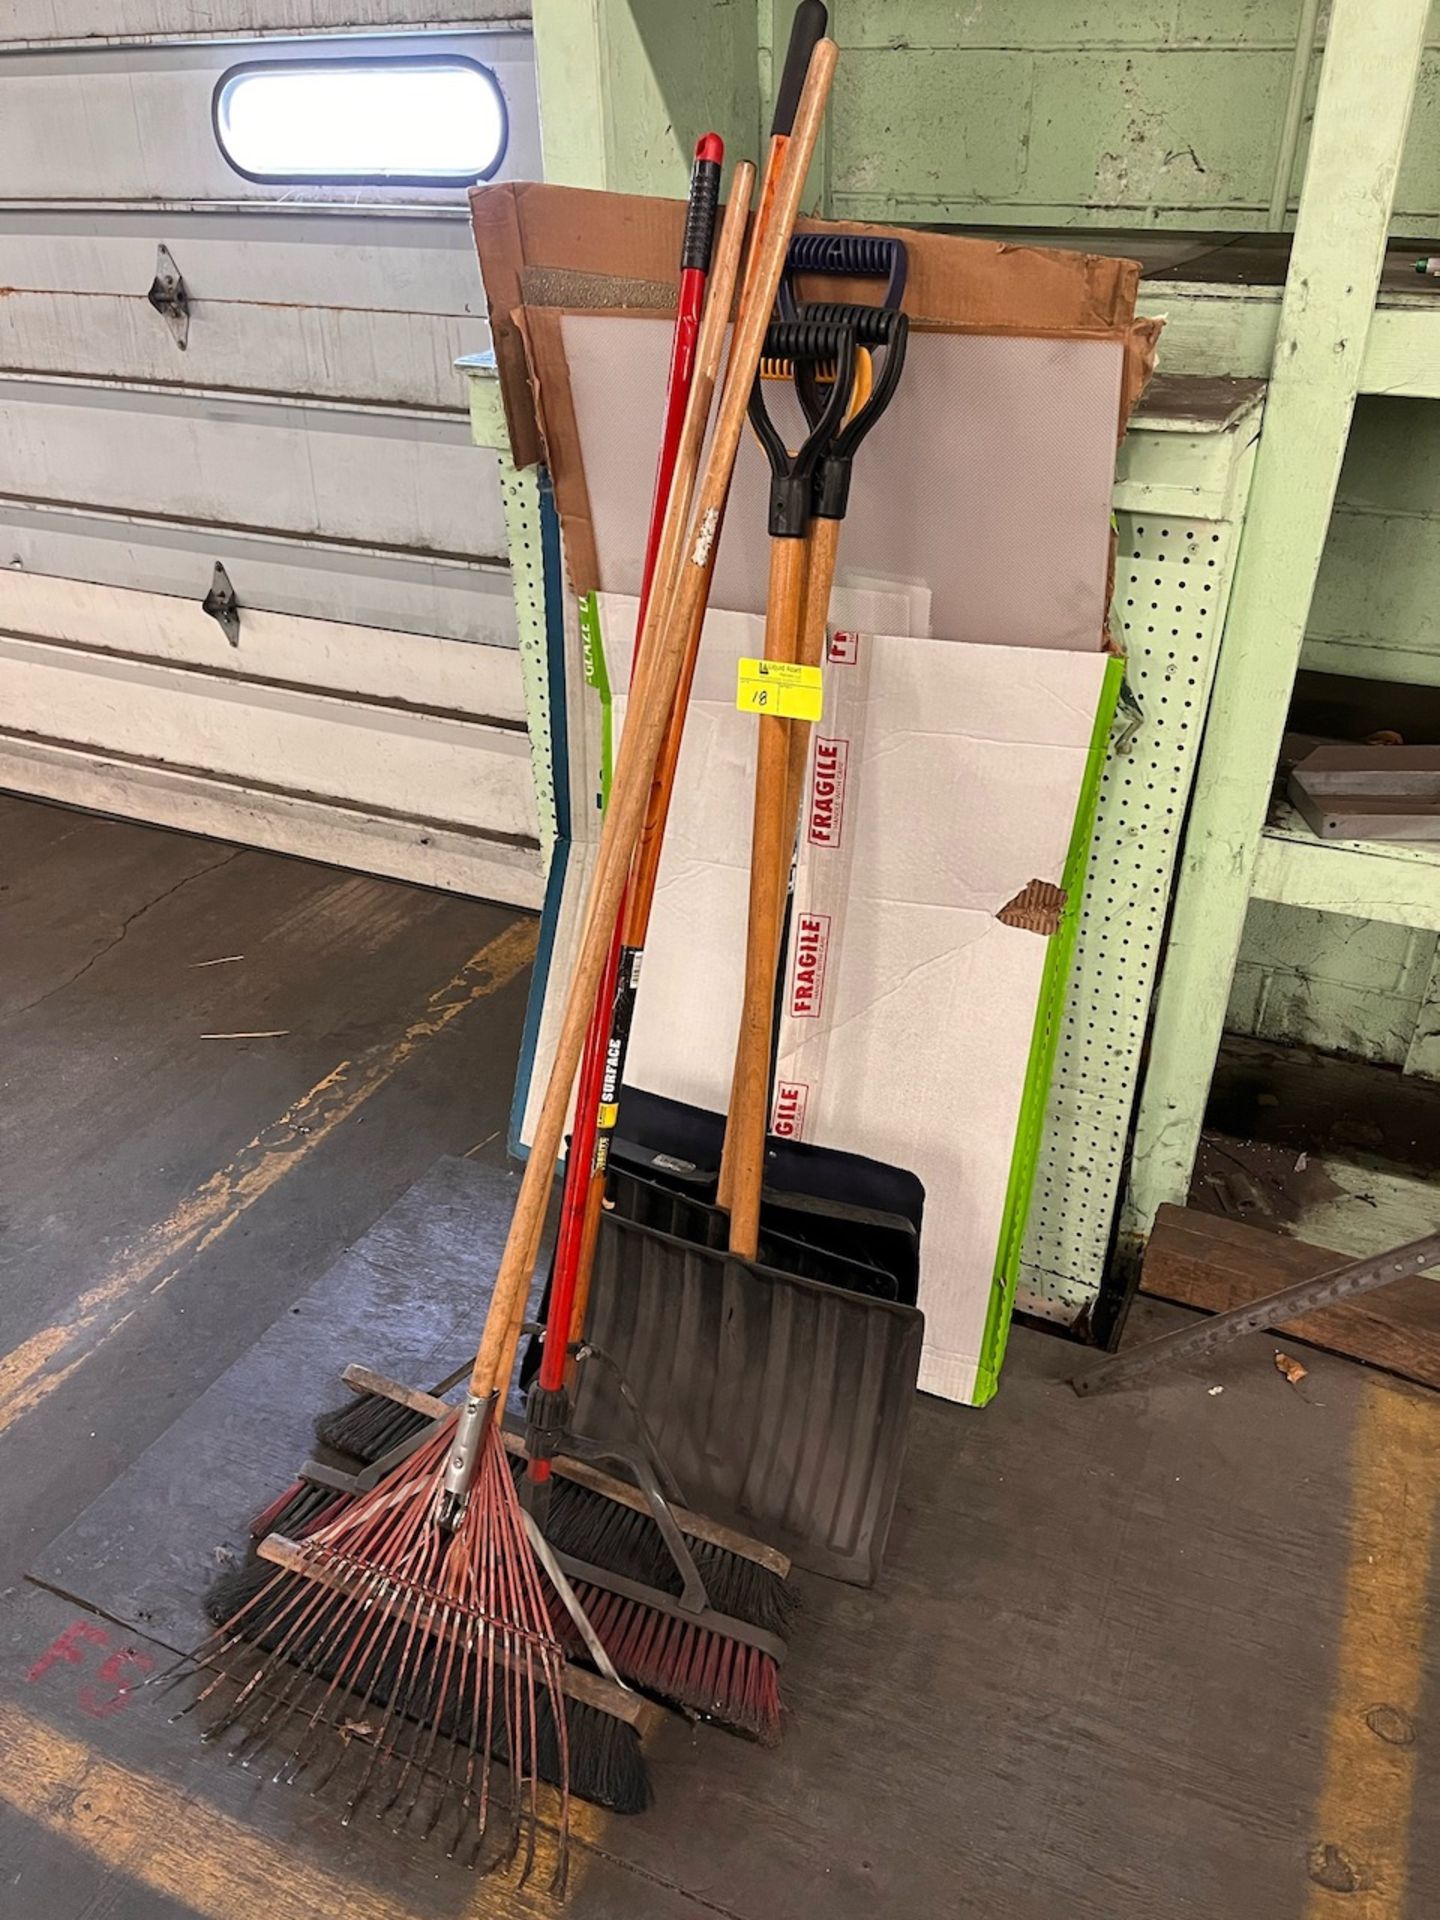 Shovels, brooms and rake